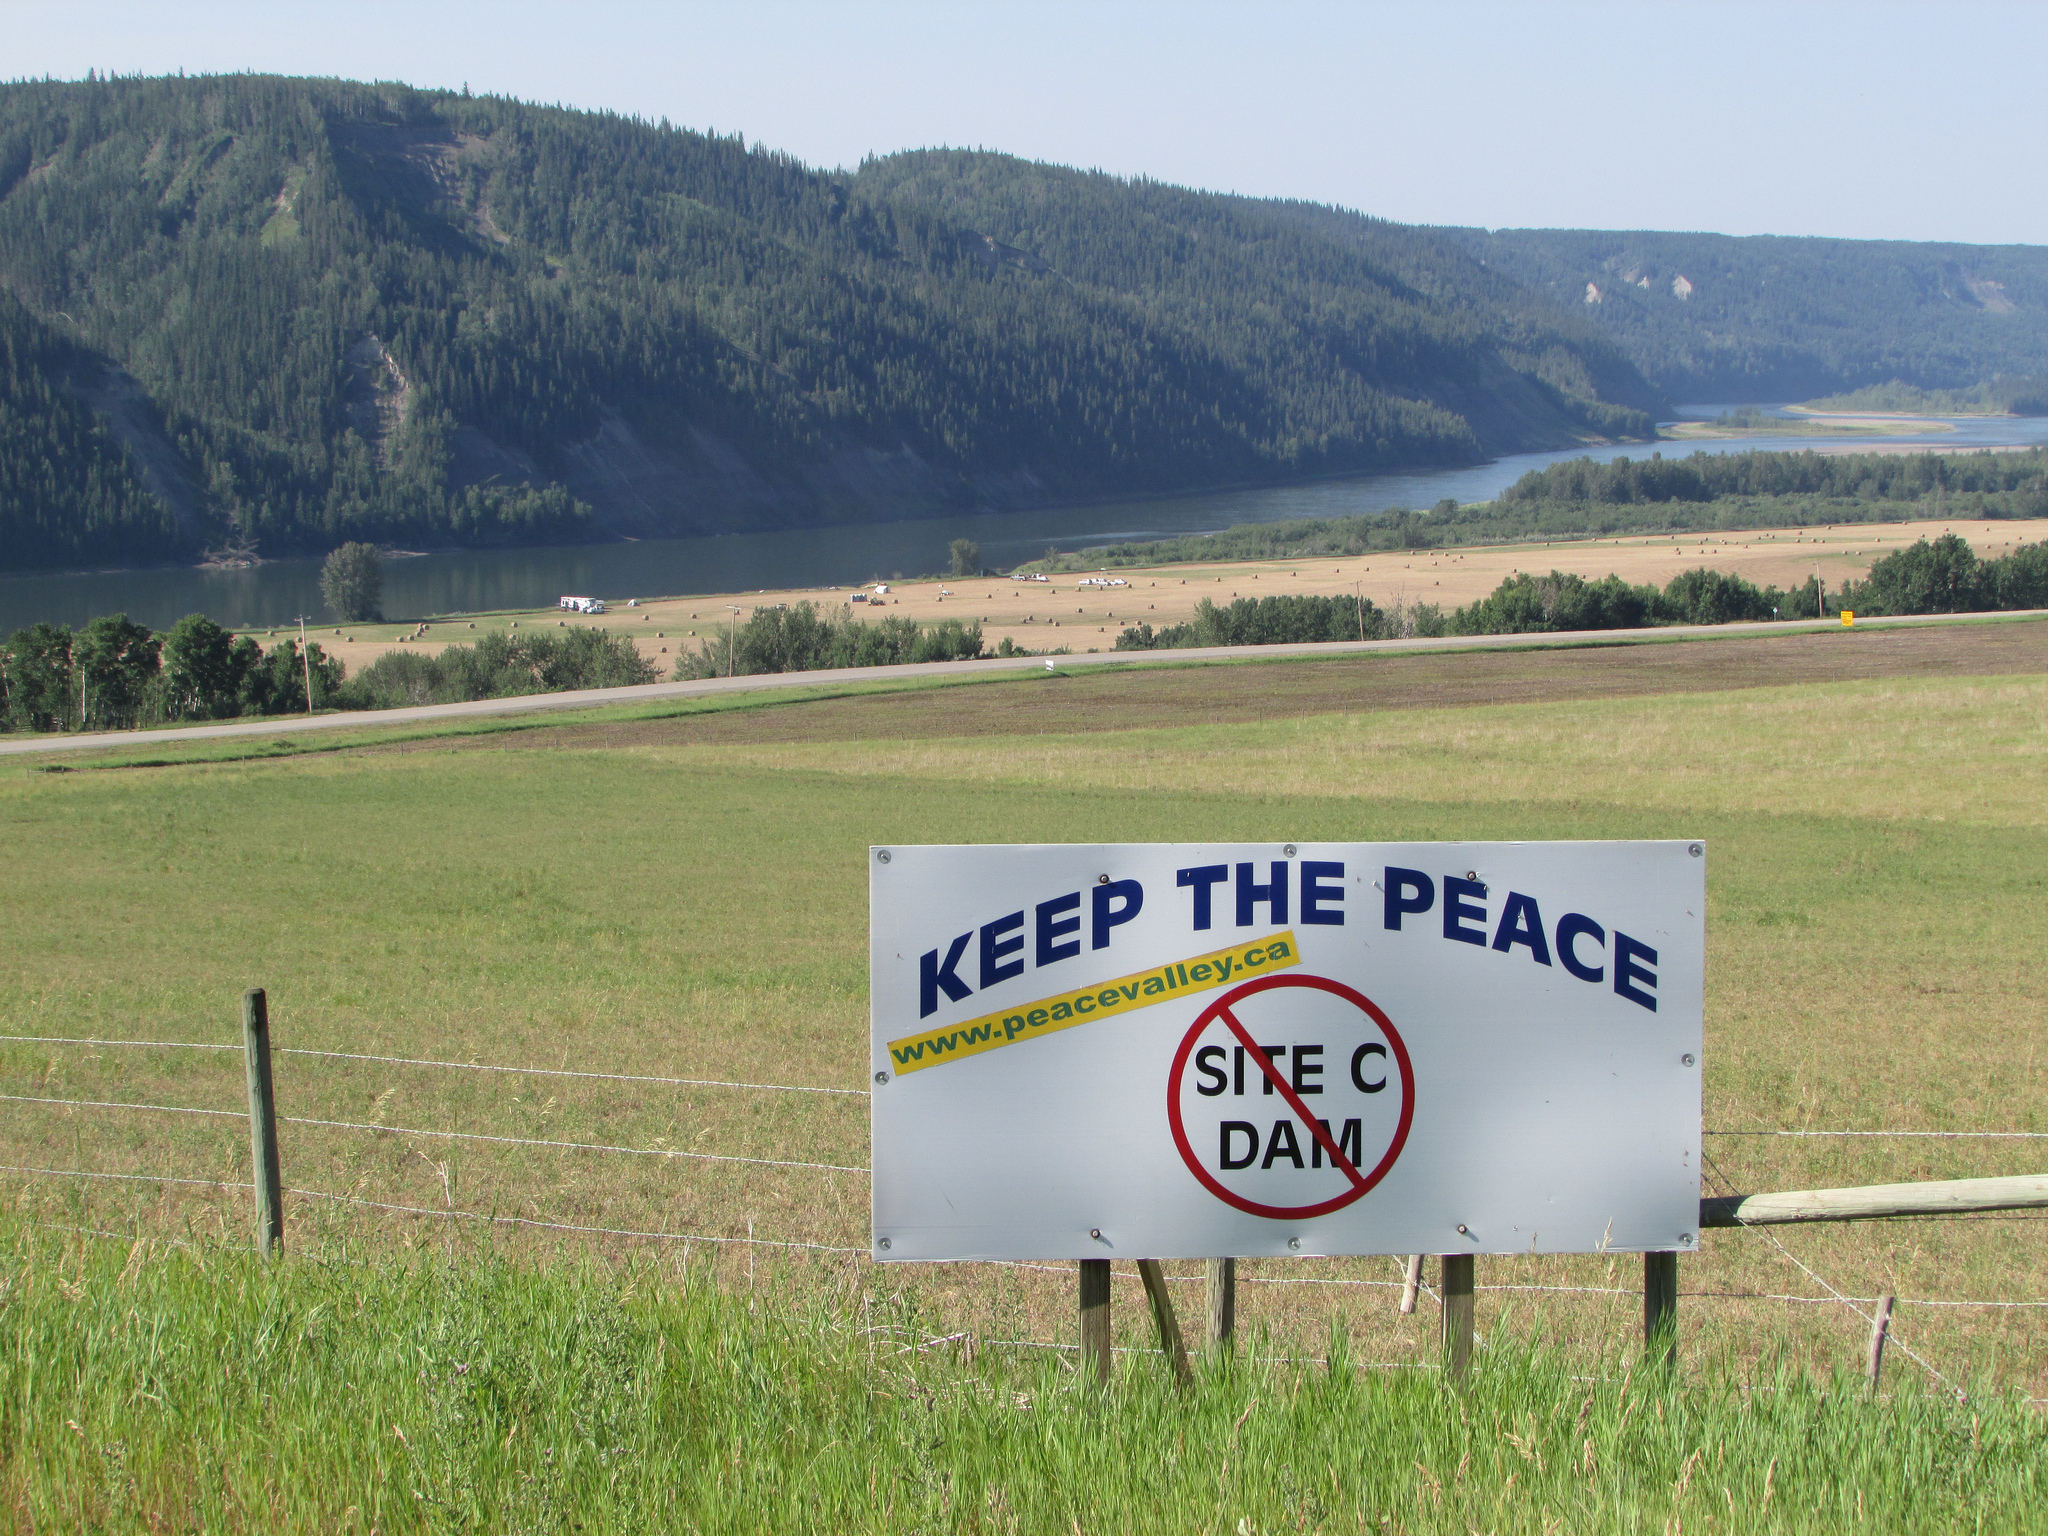 Site C dam protest sign